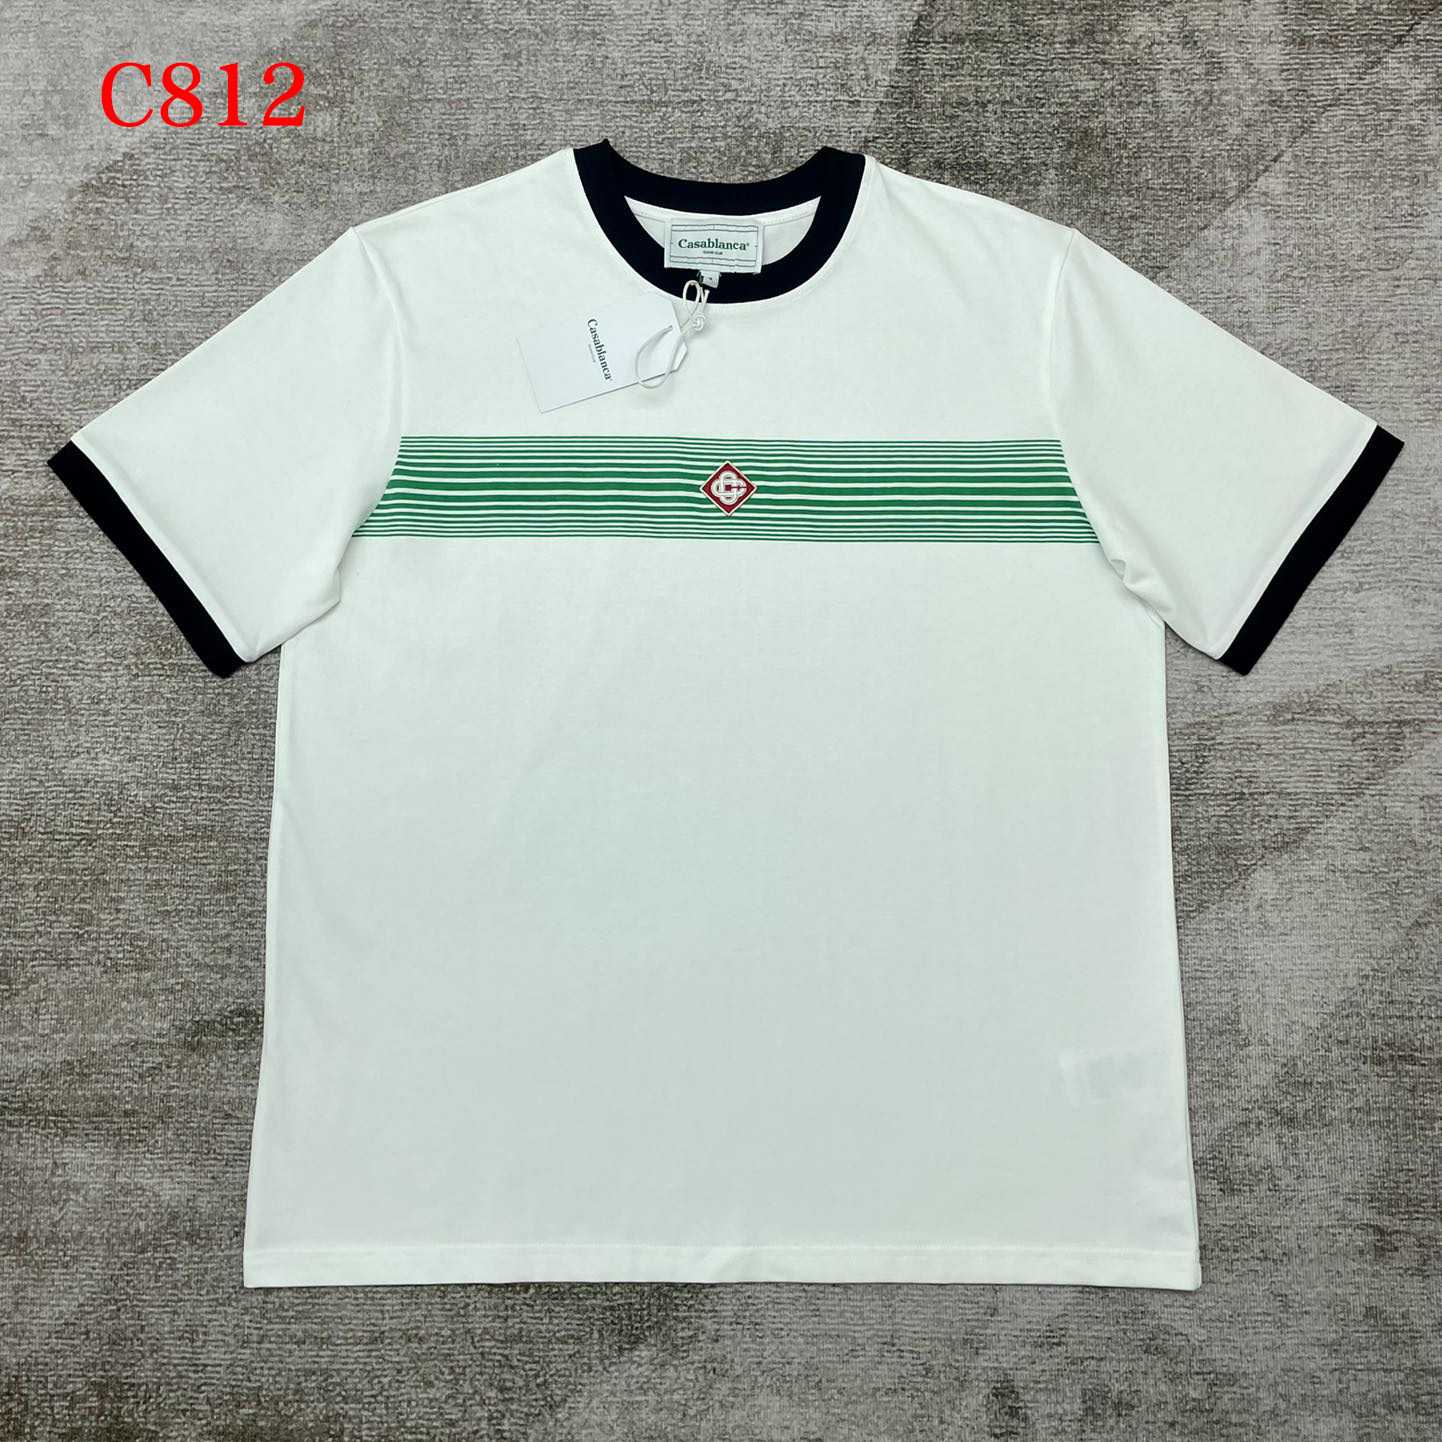 Casablanca Gradient Stripe T-shirt   C812 - DesignerGu